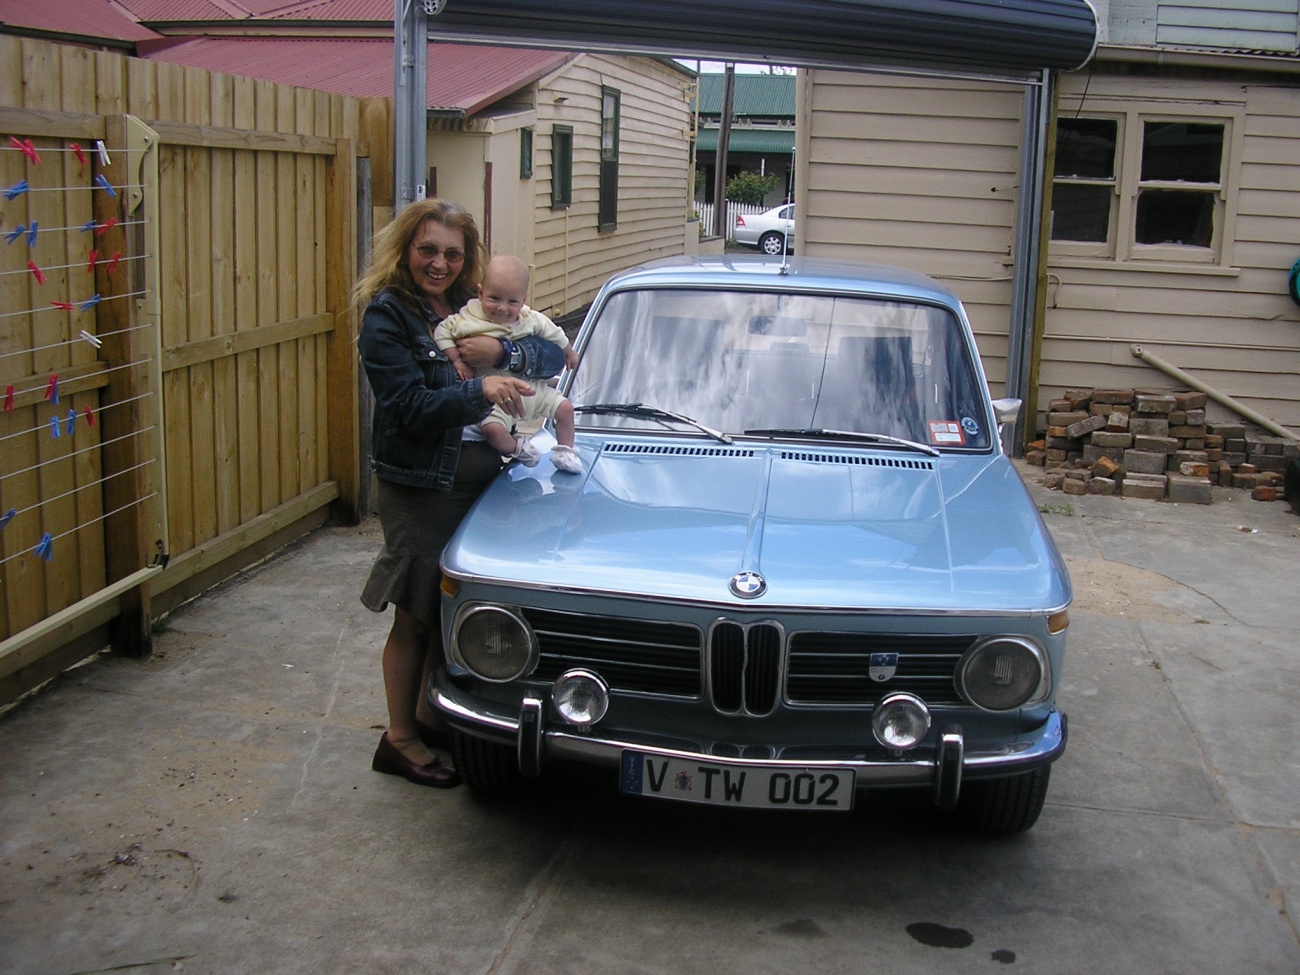 1973 BMW 2002 tii